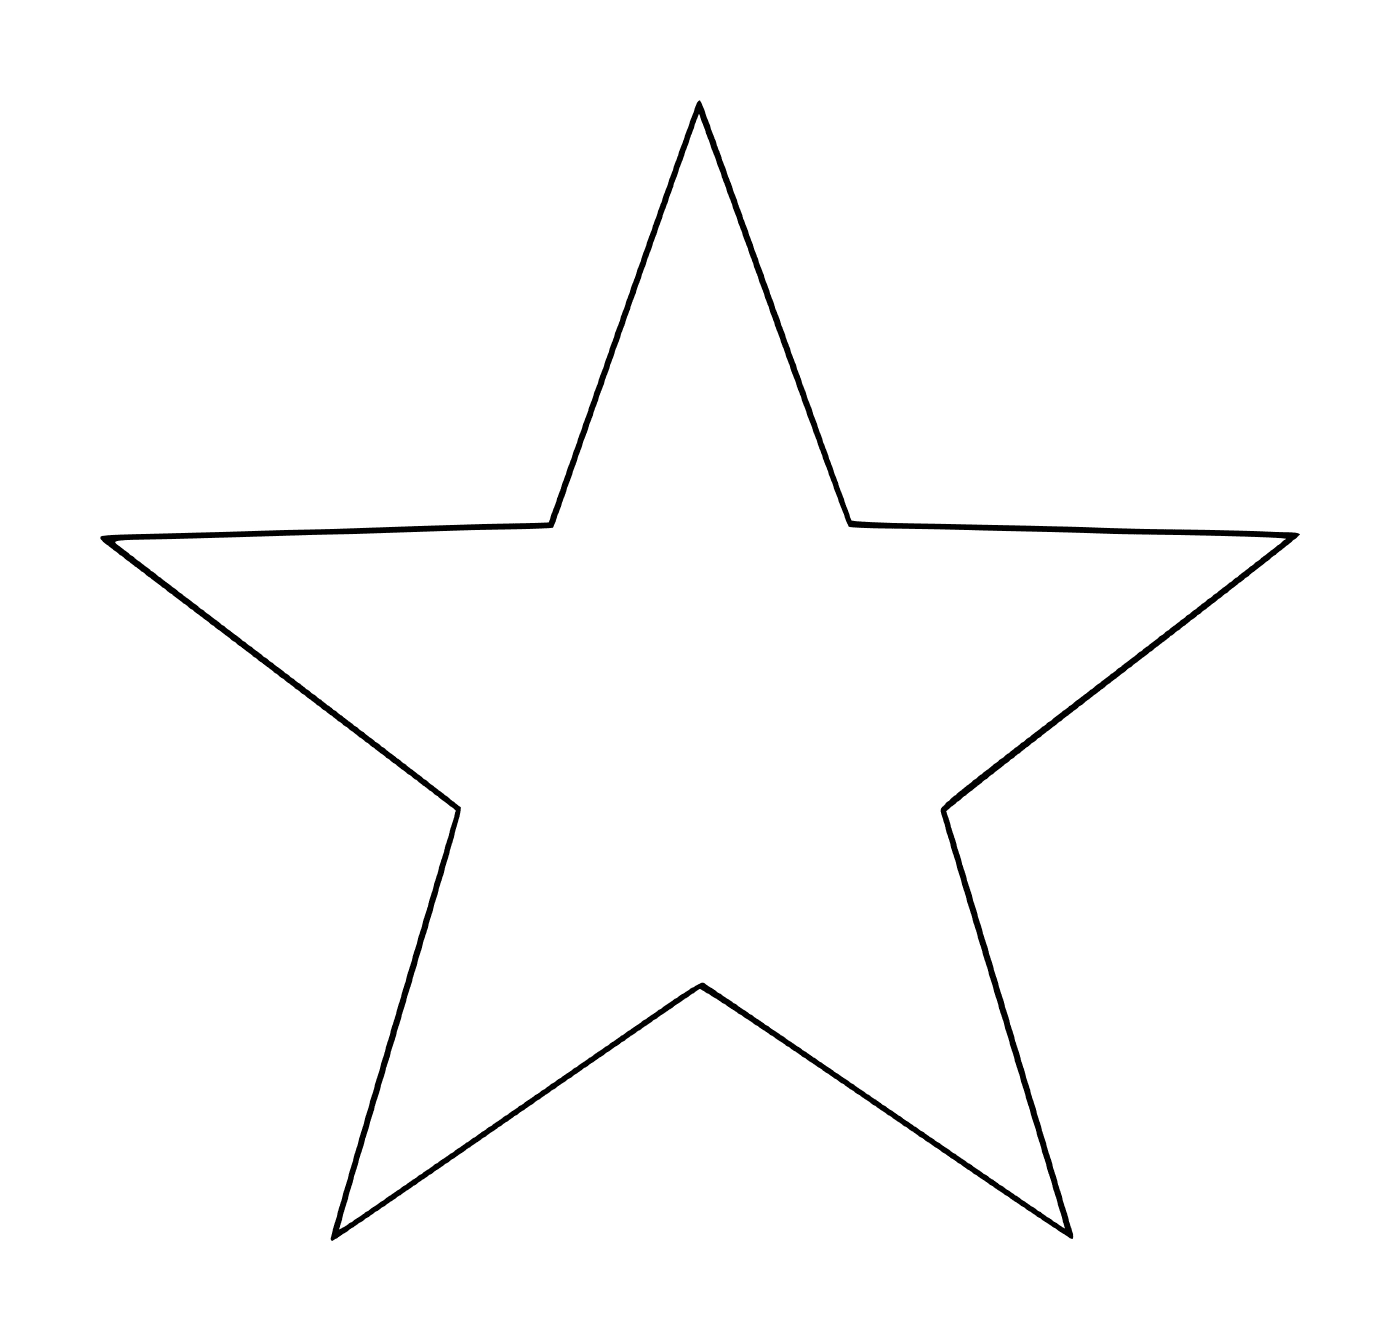   Une étoile à 5 branches facile à réaliser pour les enfants 